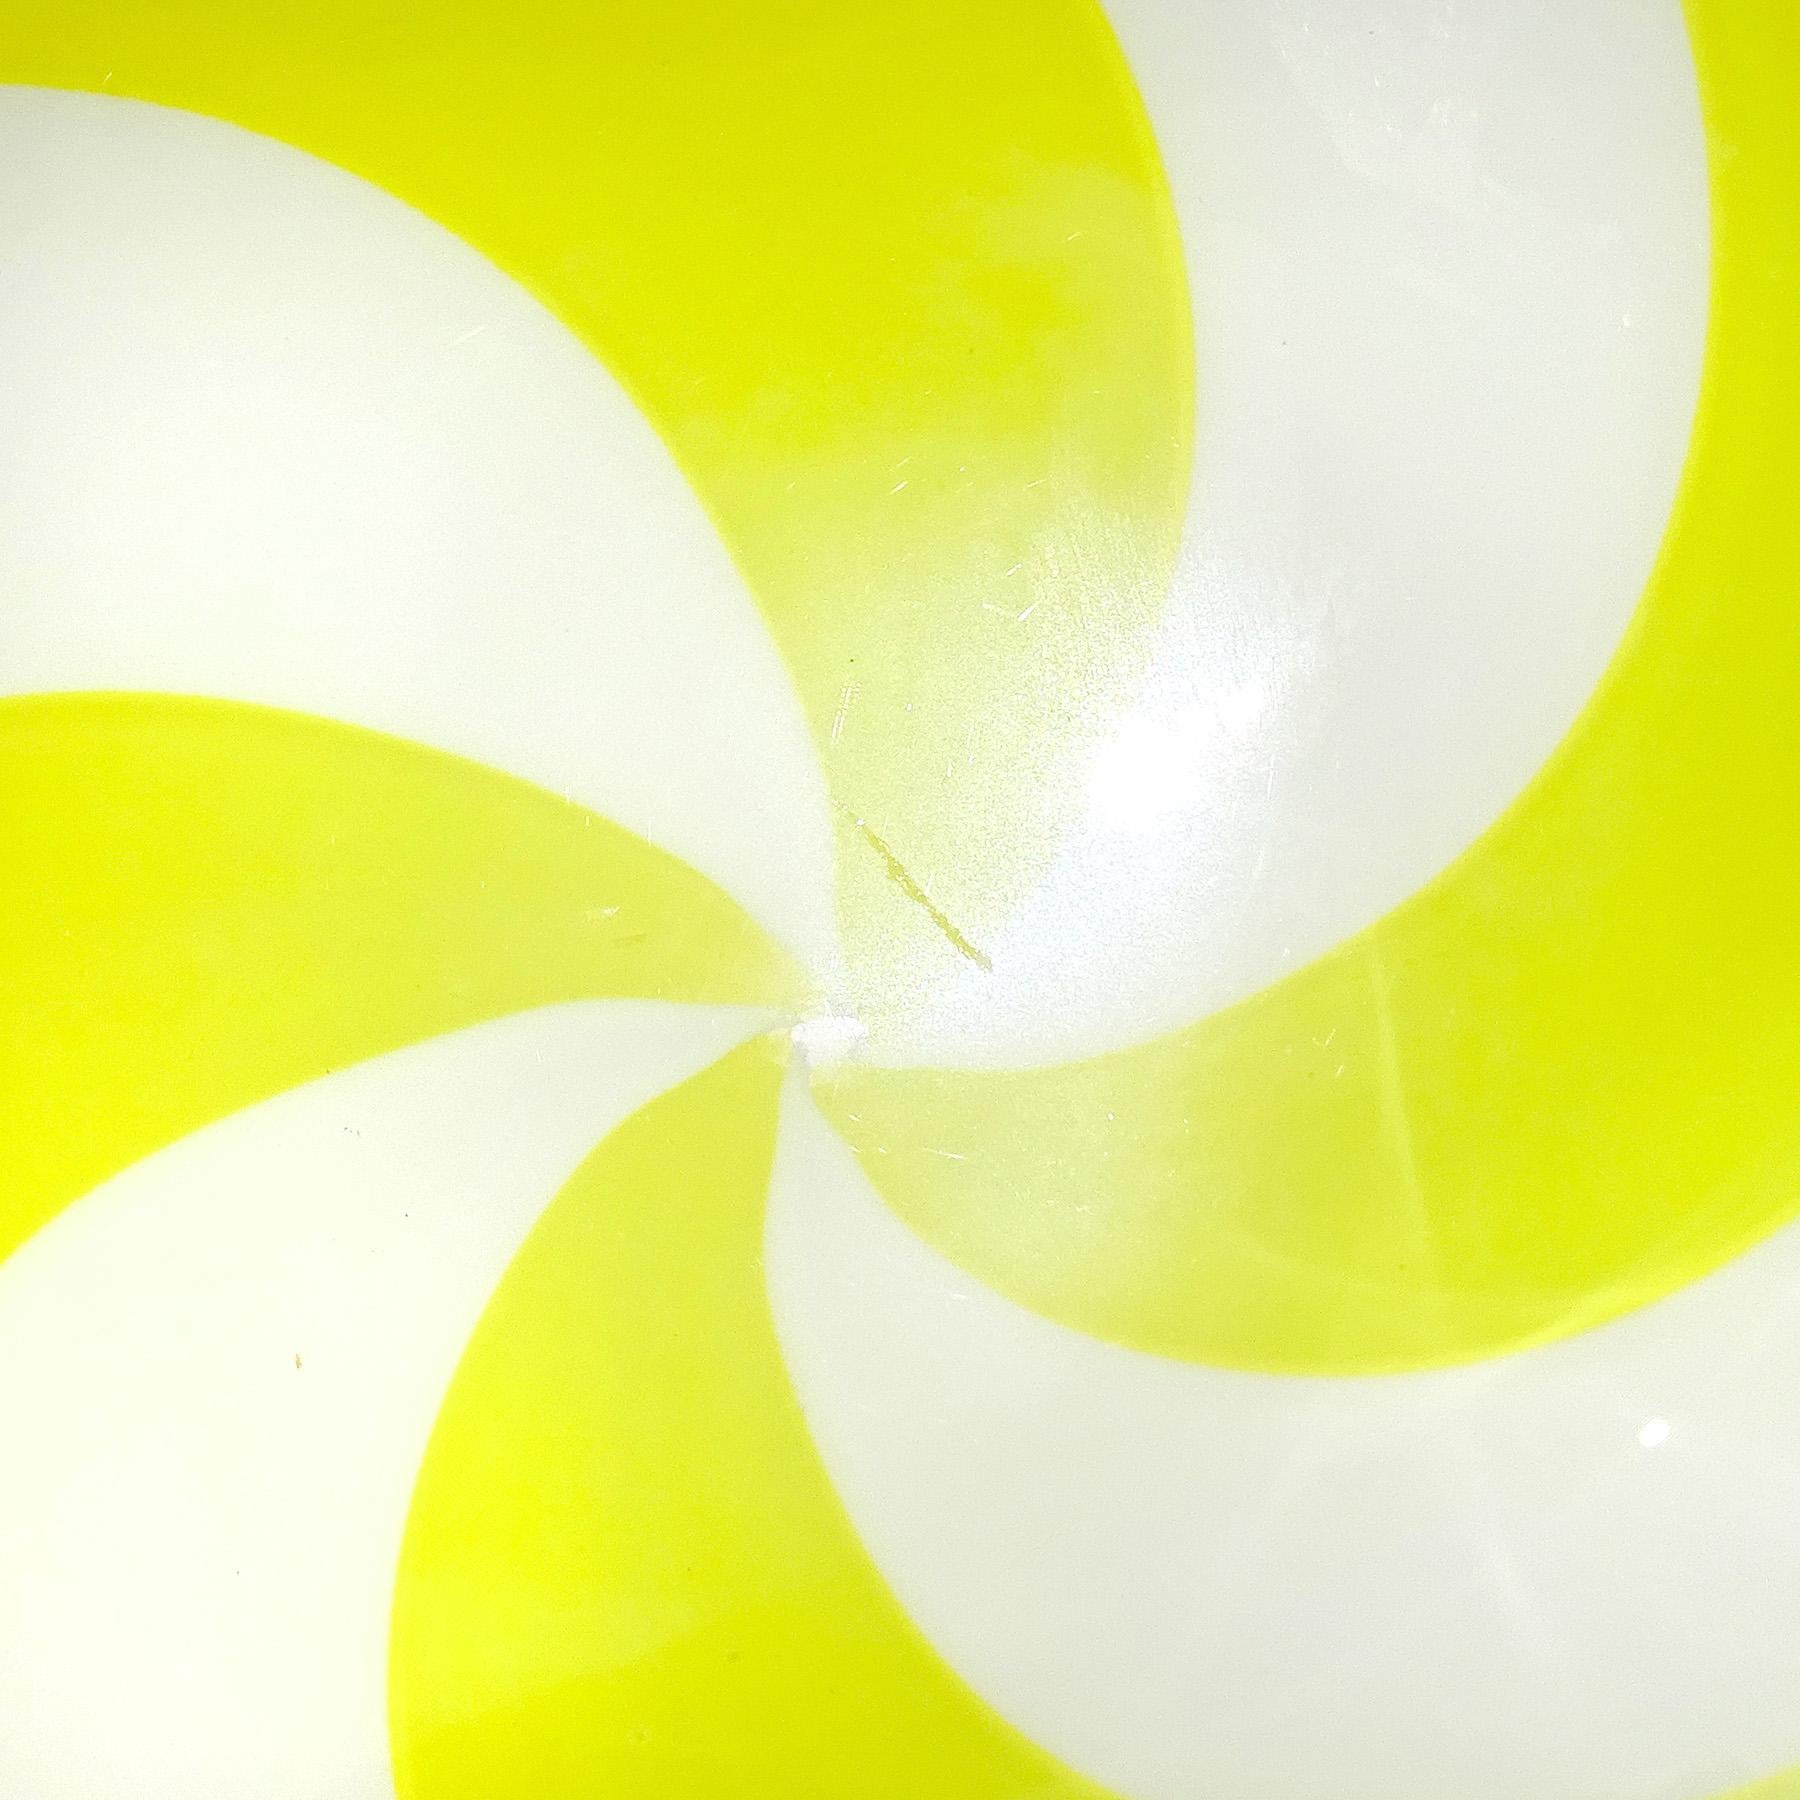 Venini Signed Fulvio Bianconi Murano Yellow White Swirl Italian Art Glass Bowl In Good Condition For Sale In Kissimmee, FL